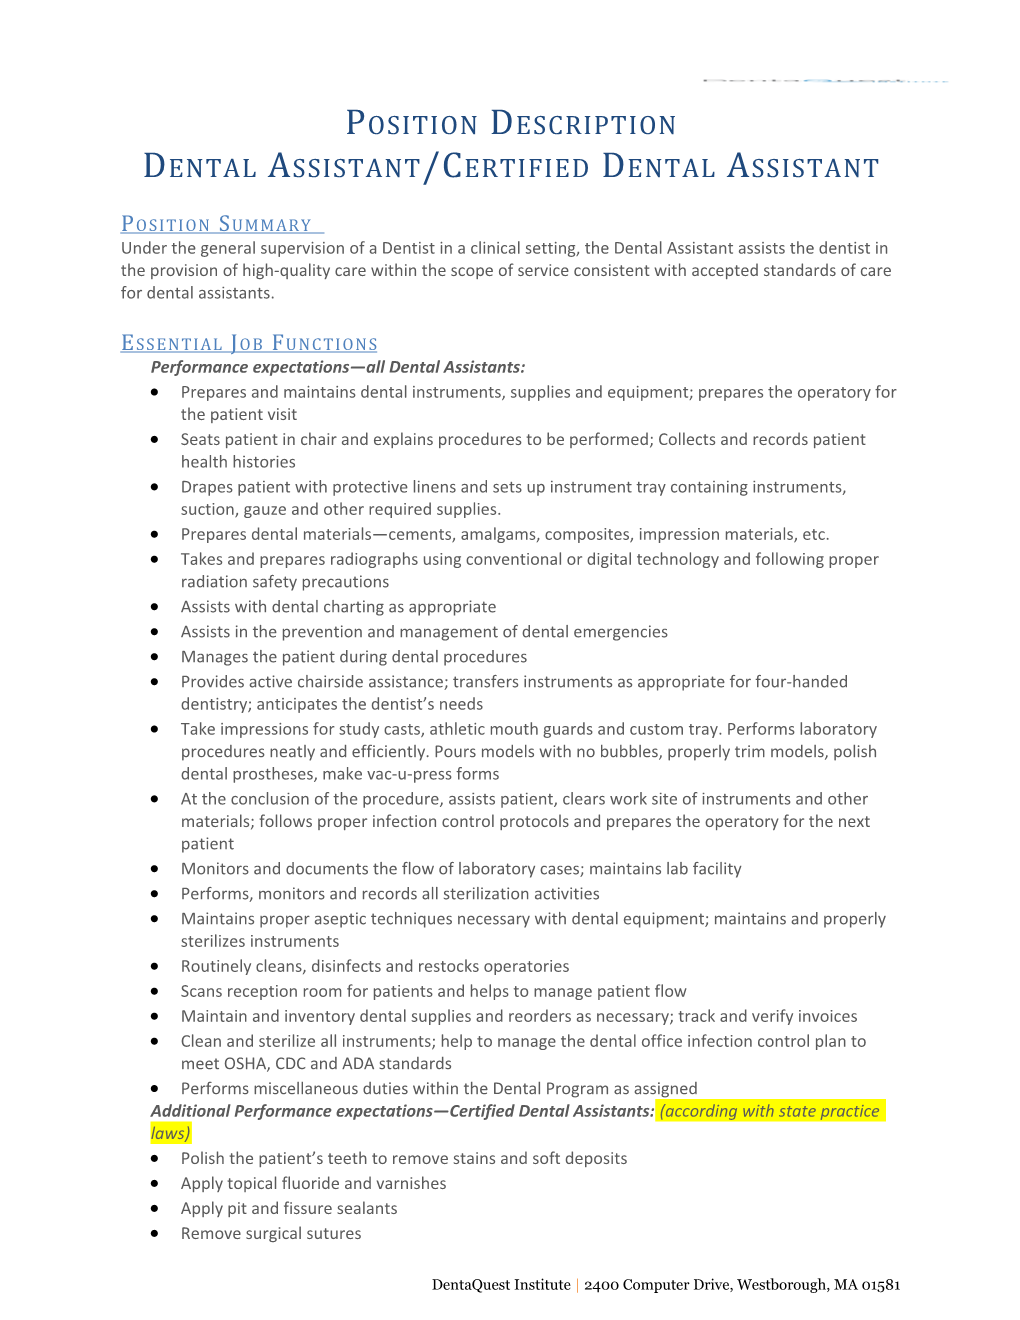 Dental Assistant/Certified Dental Assistant